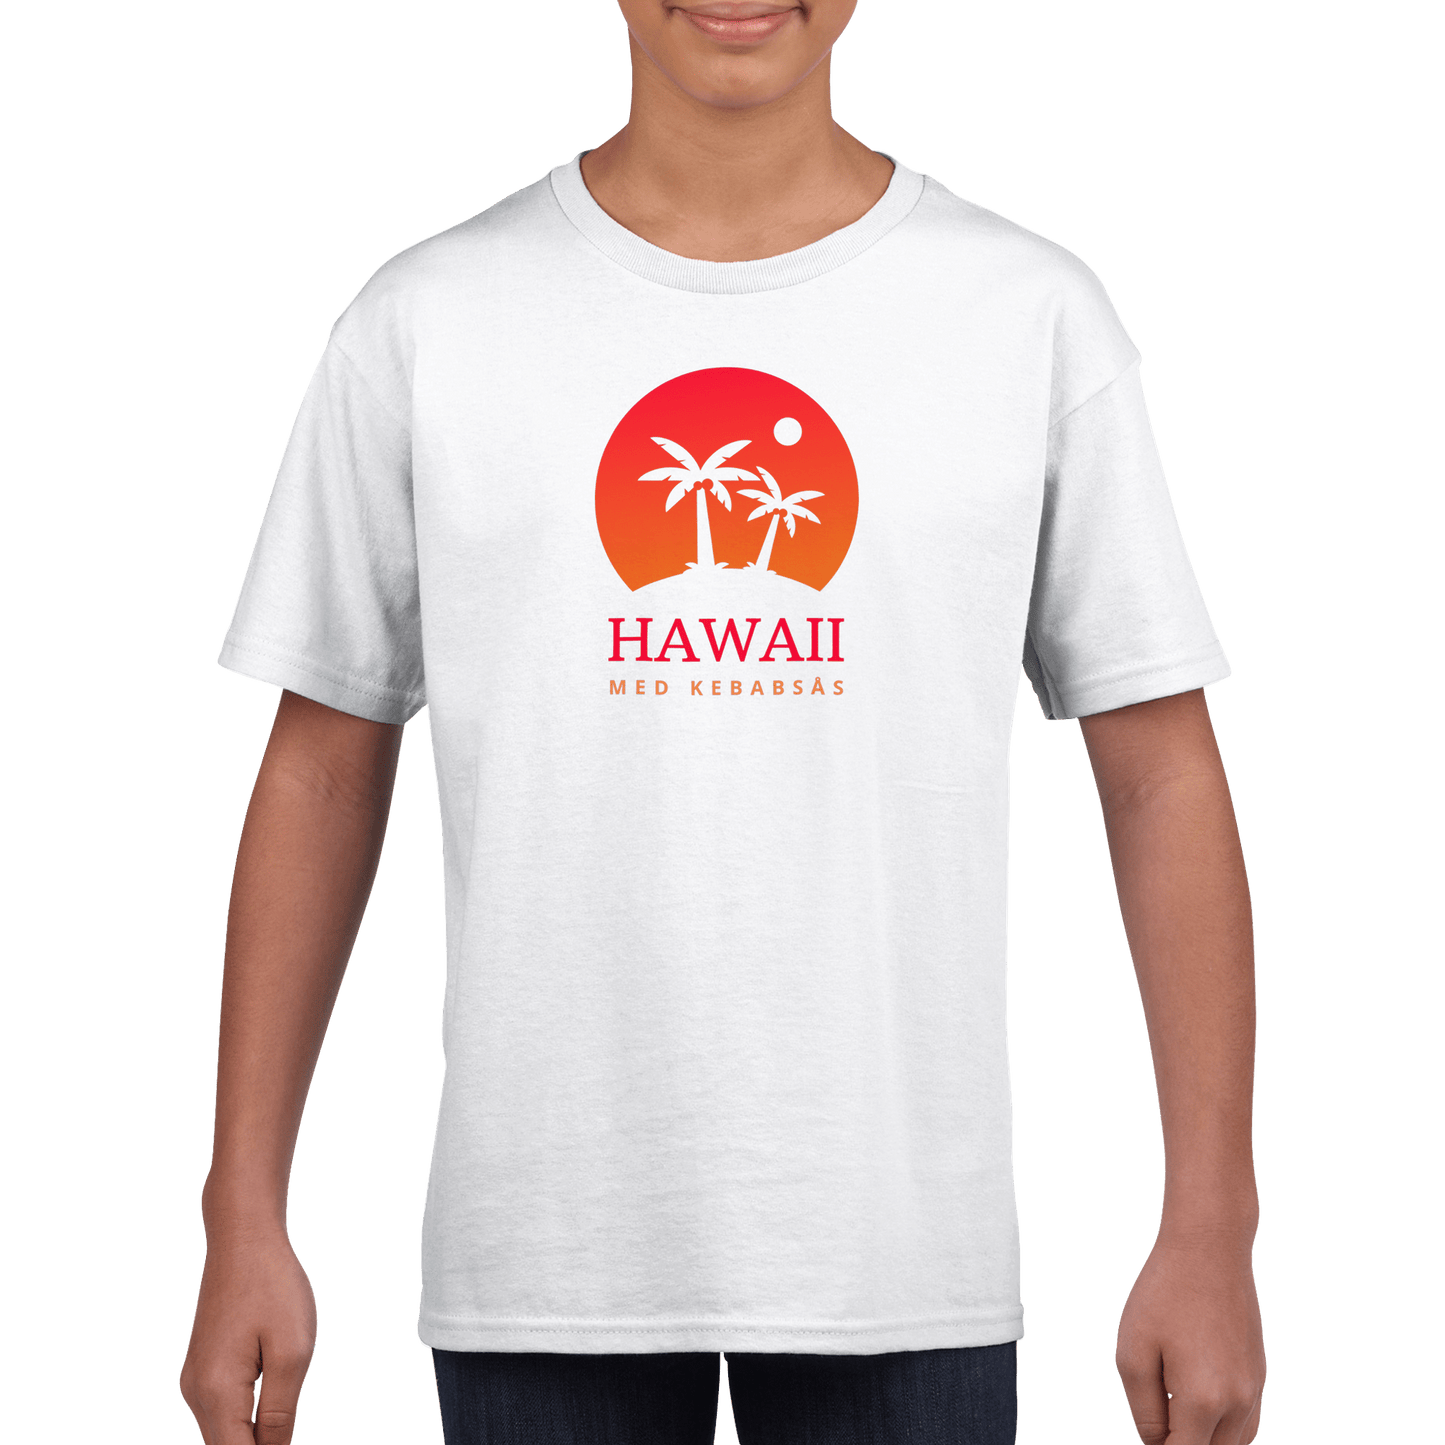 Hawaii med kebabsås - T-shirt för barn 